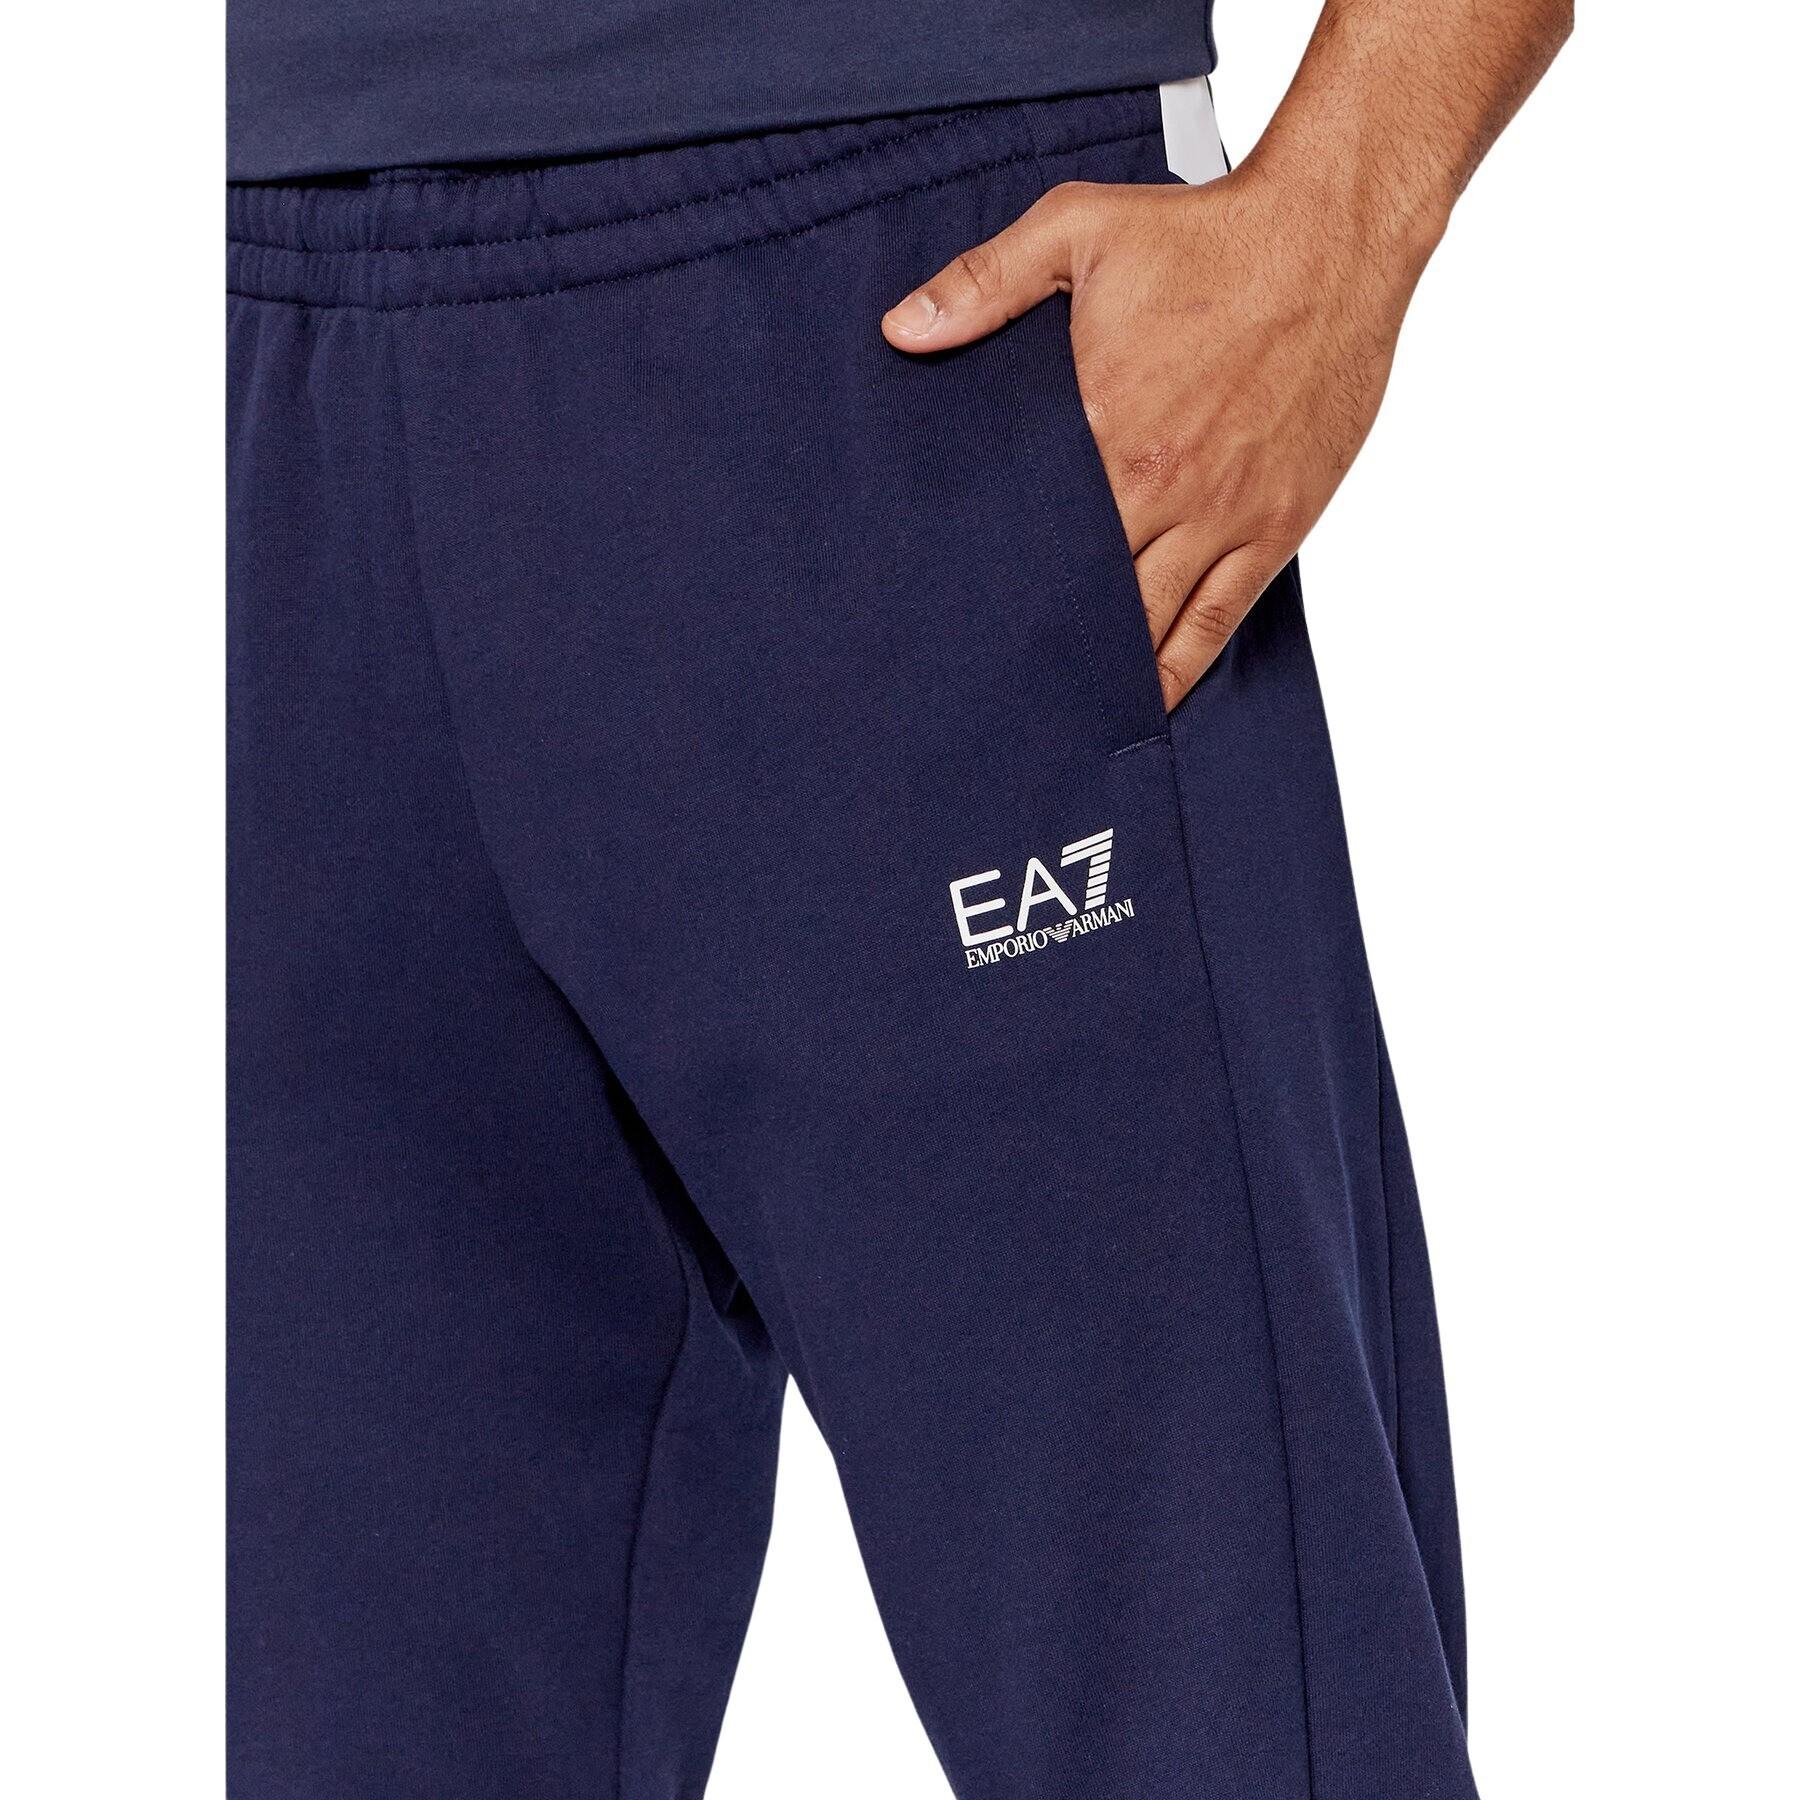 Pantalon EA7 Emporio Armani